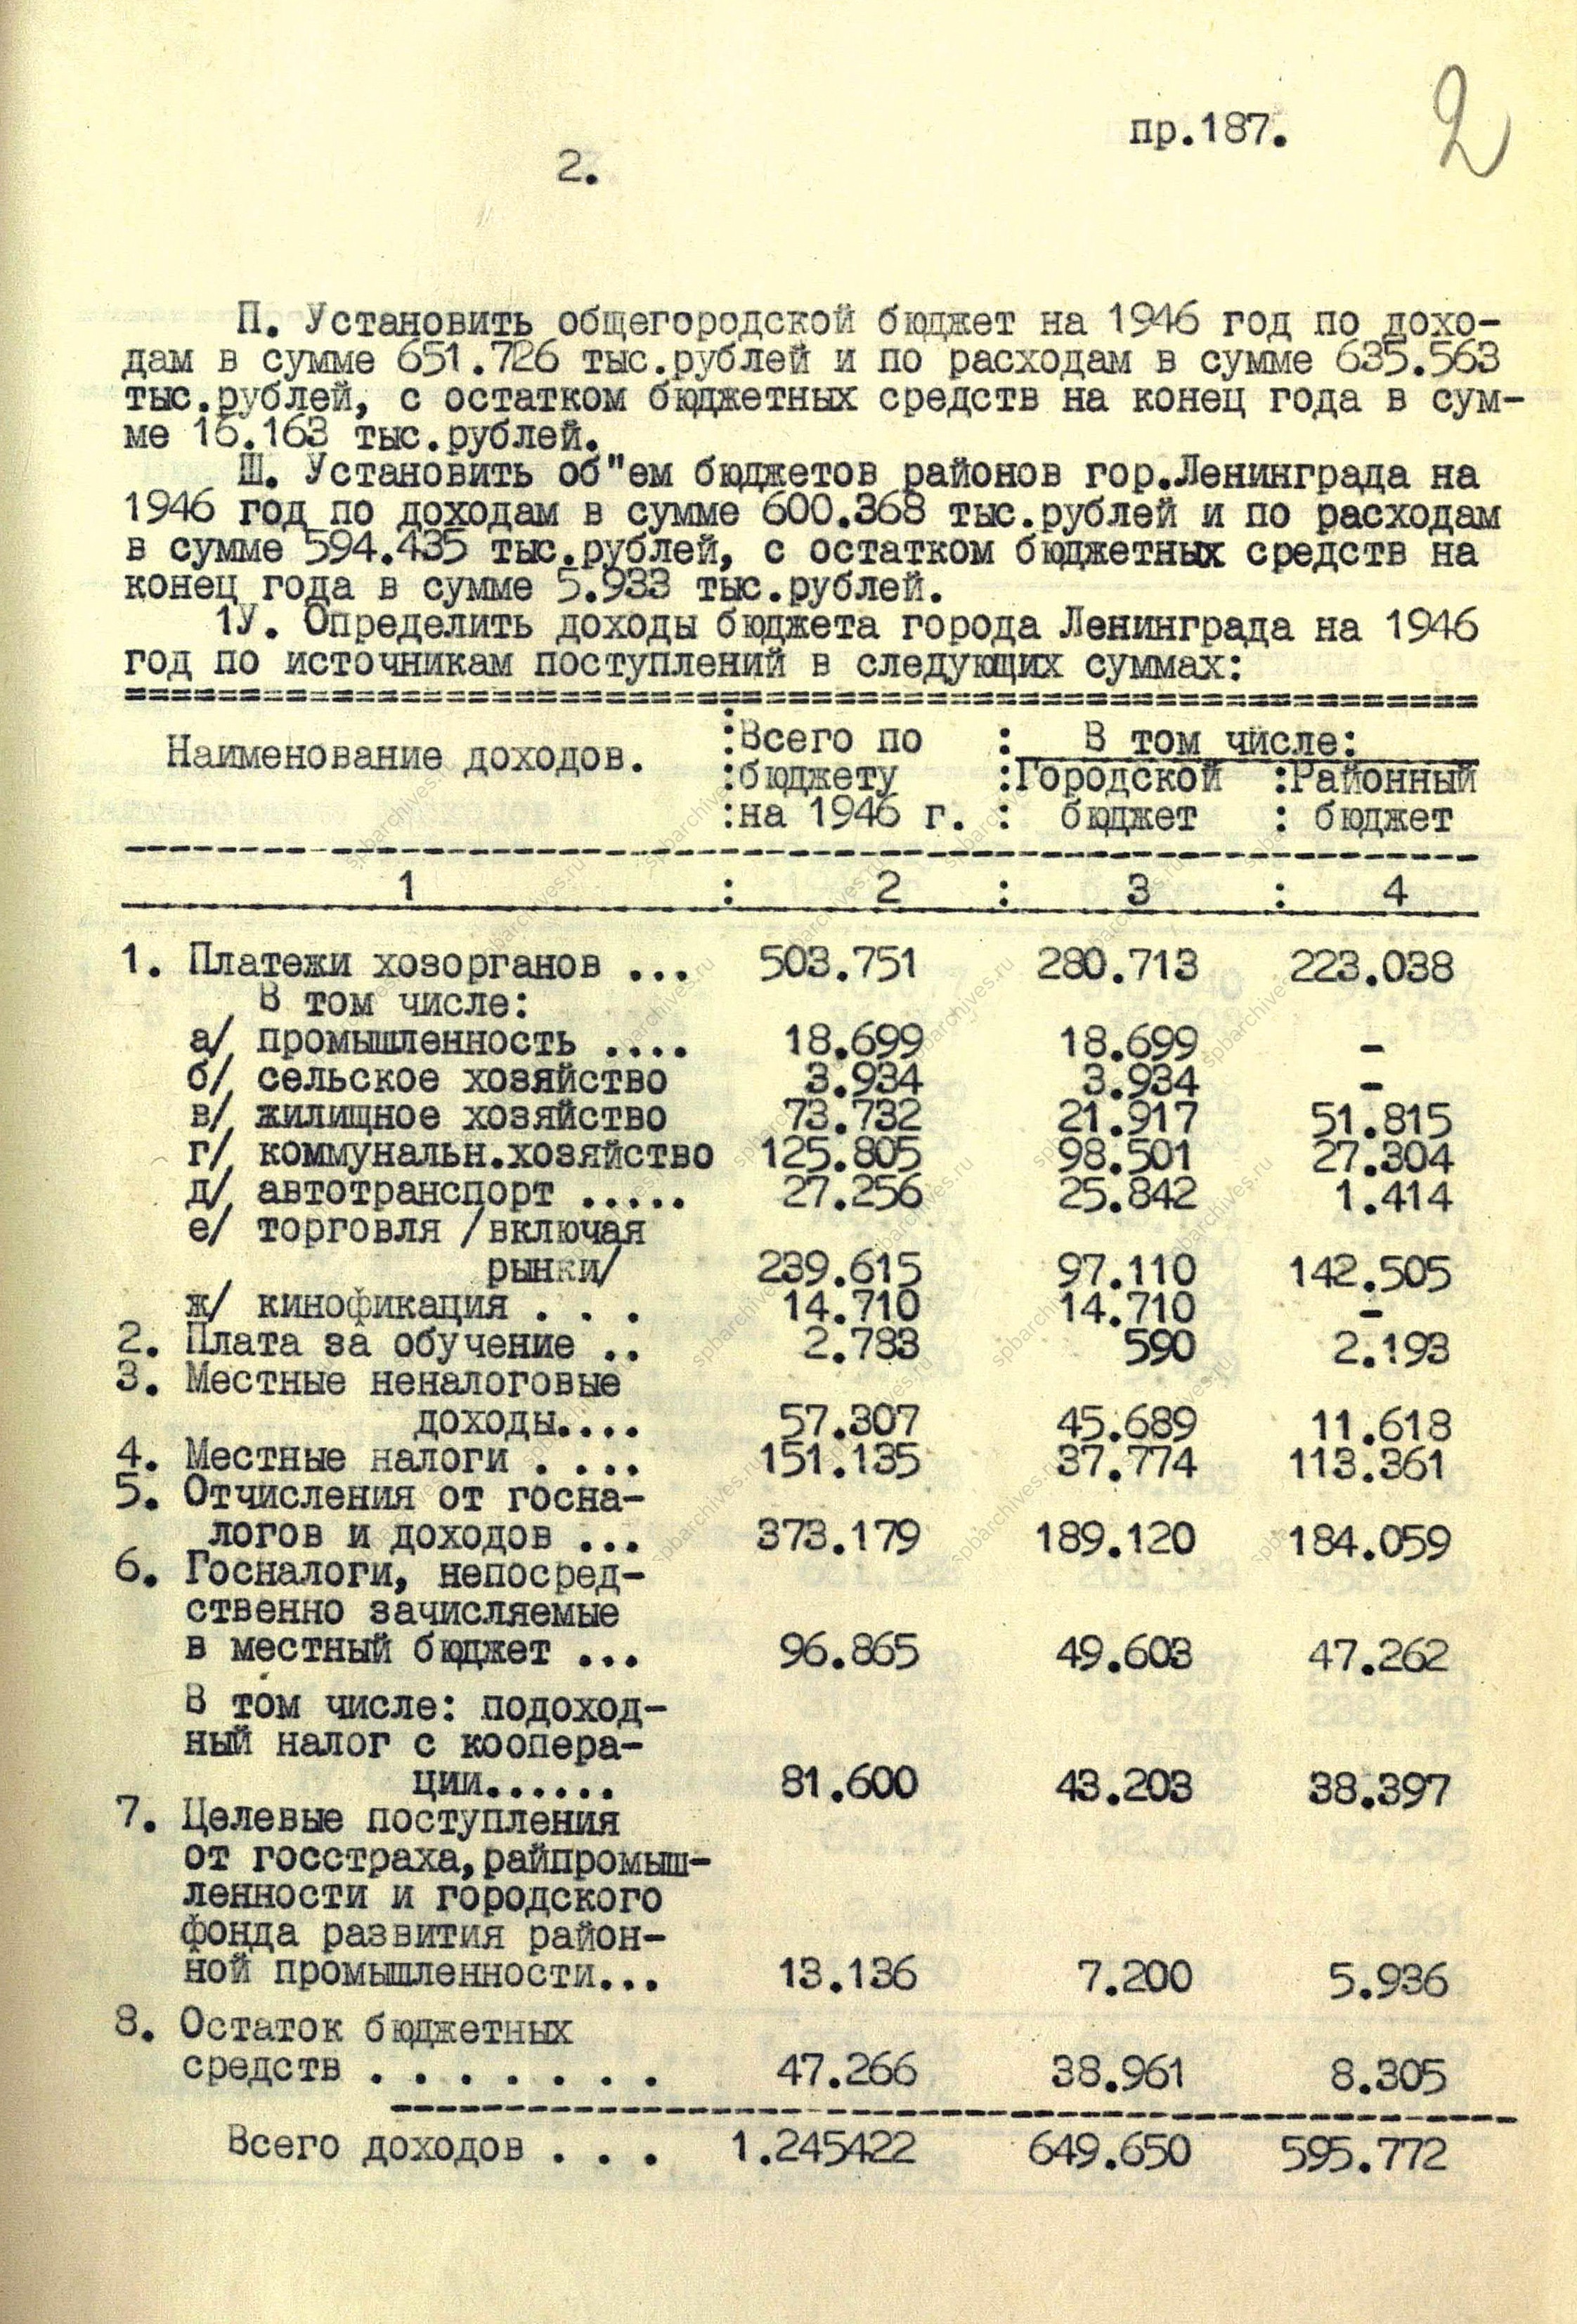 Из протокола заседания Ленгорисполкома – решение «О бюджете Ленинграда на 1946 г. и об исполнении бюджета за 1945 г.».<br />
1 июля 1946 г.<br />
<em>ЦГА СПб. Ф.7384. Оп.25. Д.136. Л.1-6.</em>